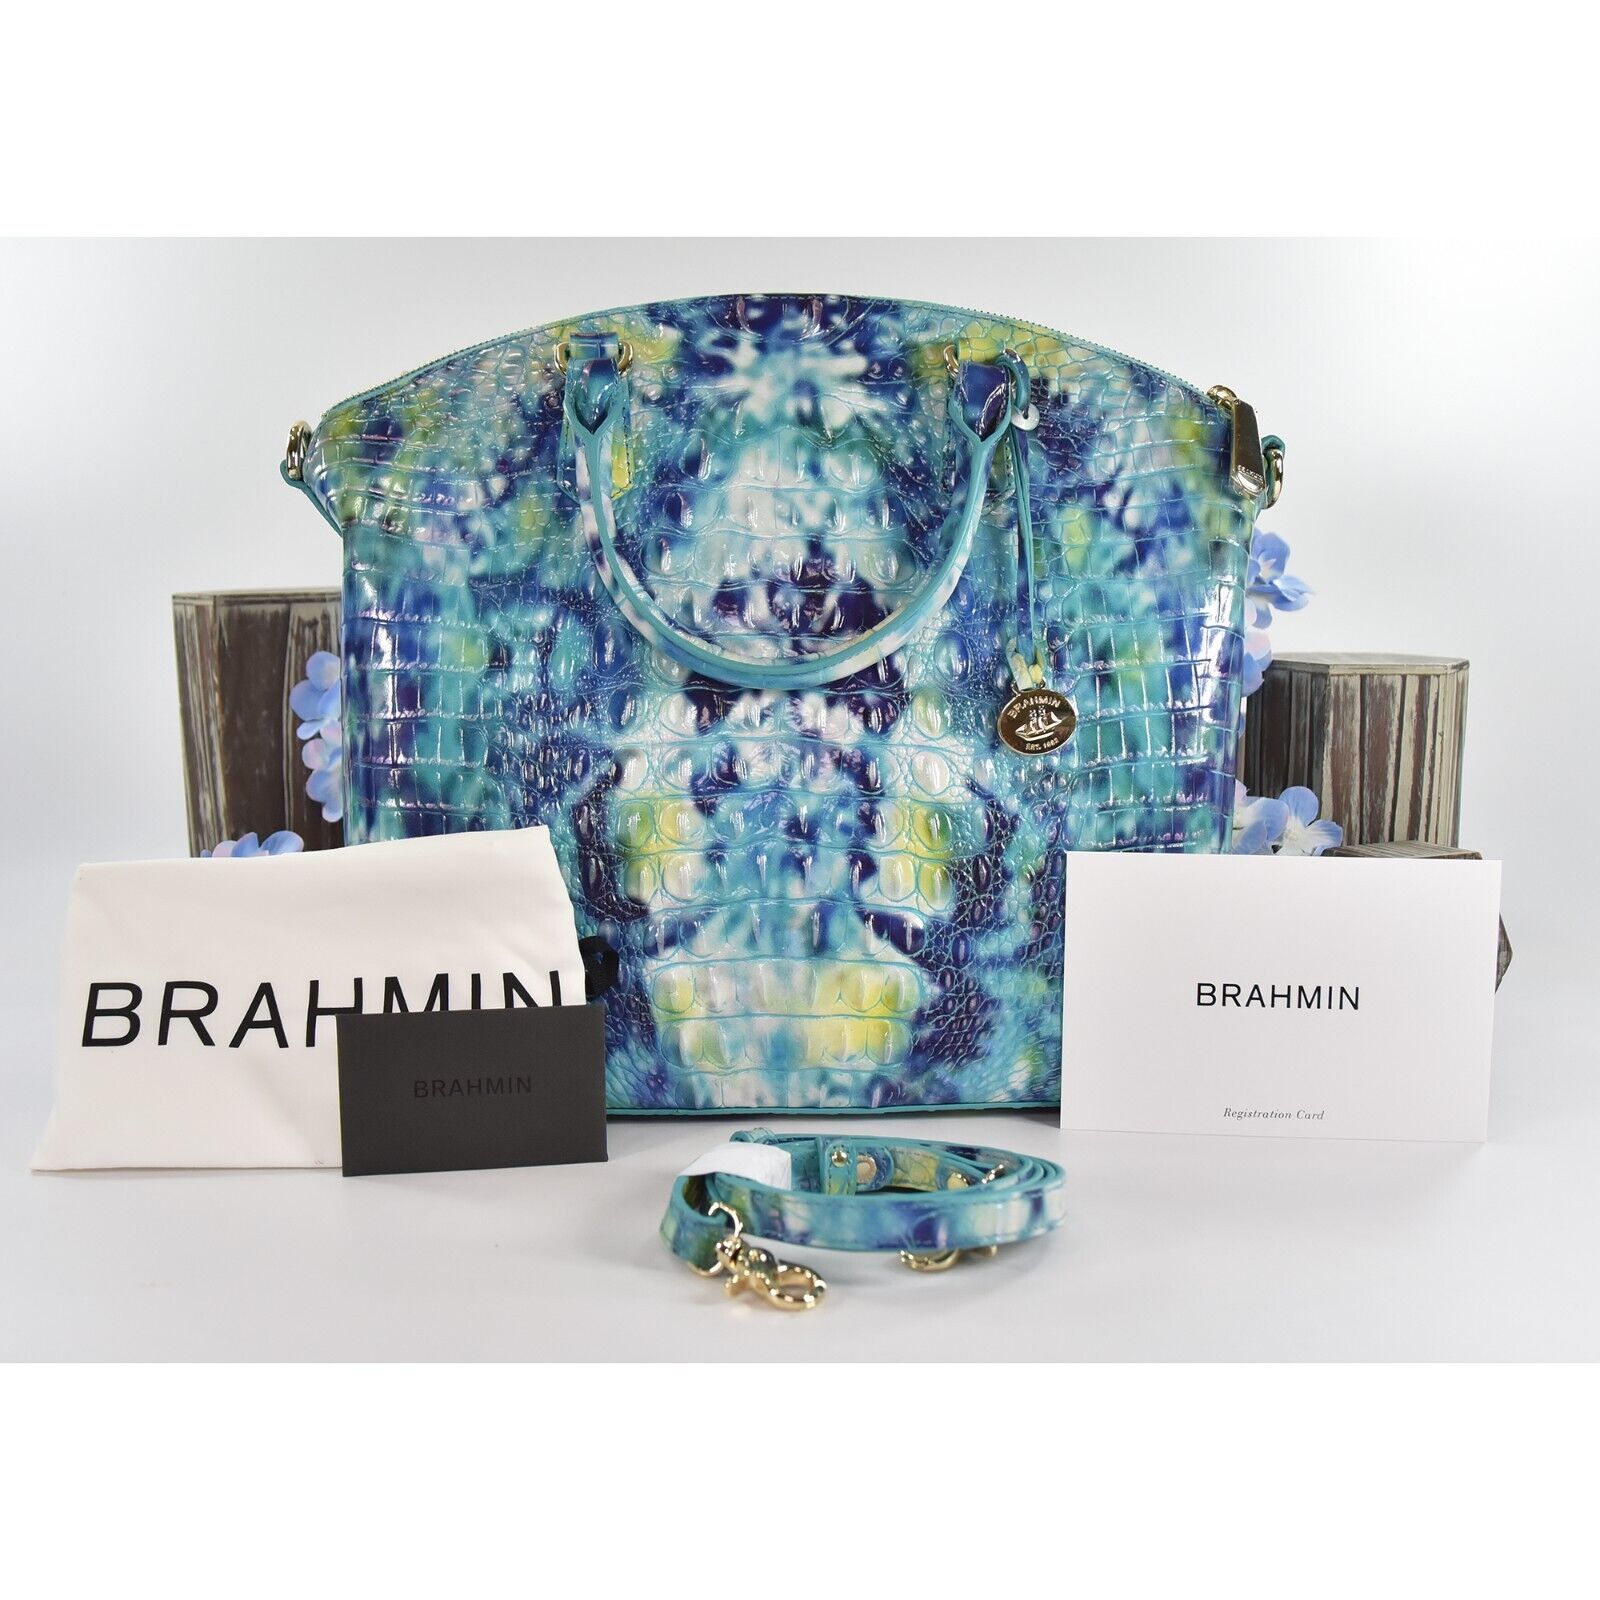 Brahmin Duxbury Satchel in Blue